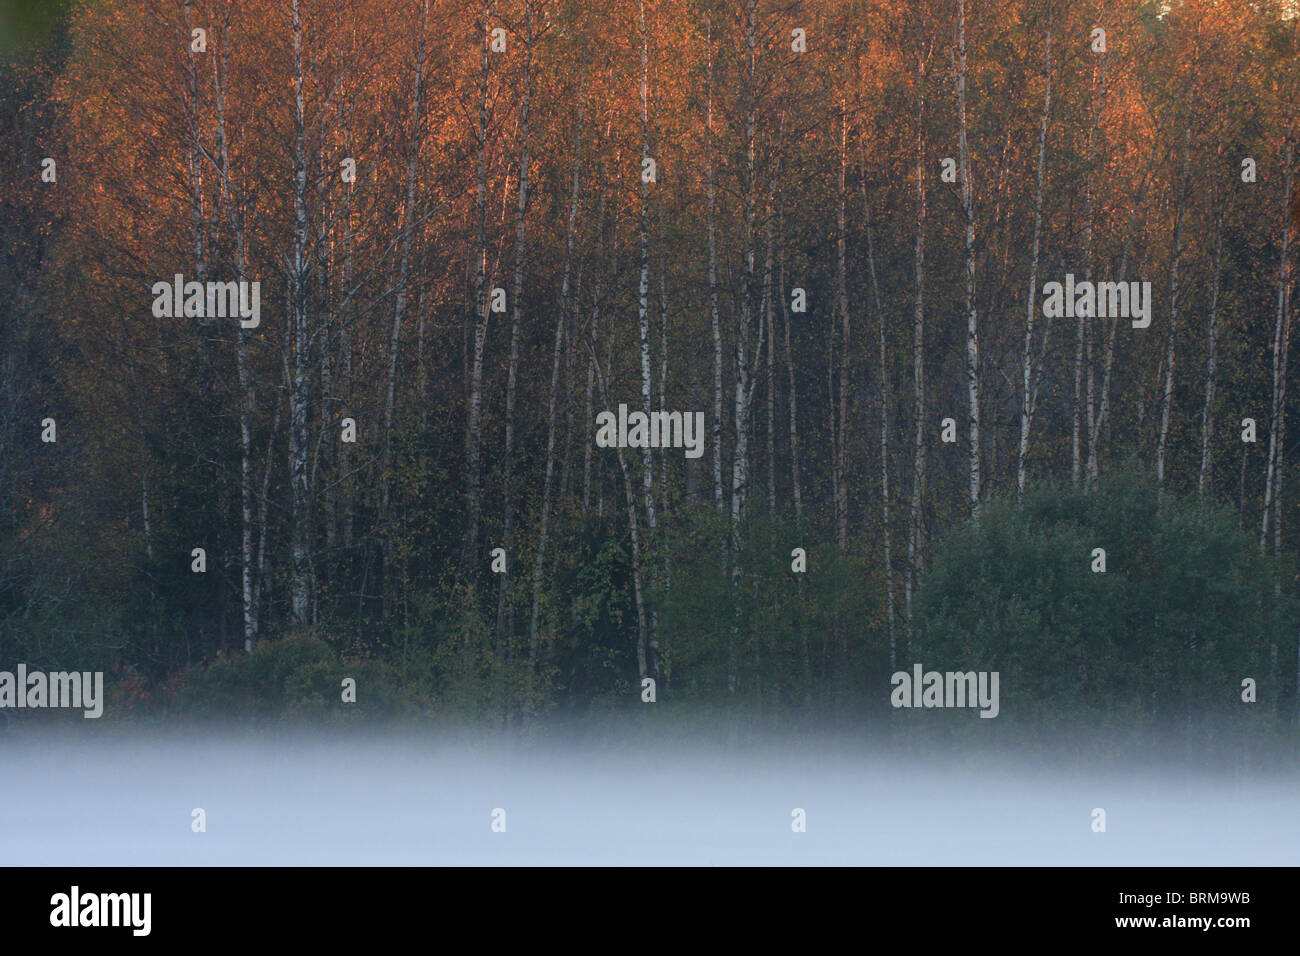 Foggy autumn landscape photo of birchwood, Lower-Pedja Nature Reserve, Estonia Stock Photo